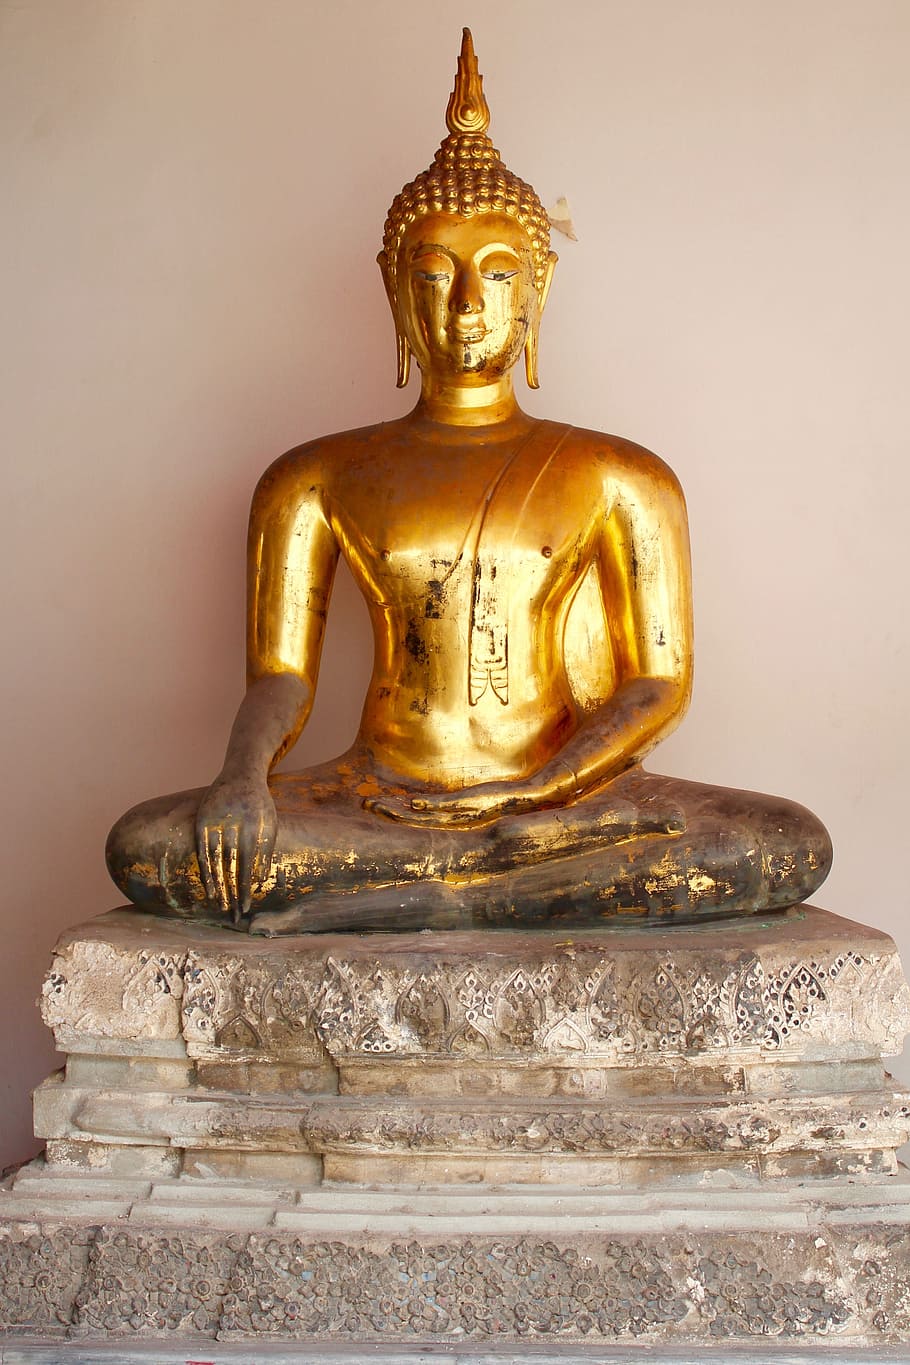 HD wallpaper: sitting brass-colored buddha statue near white wall